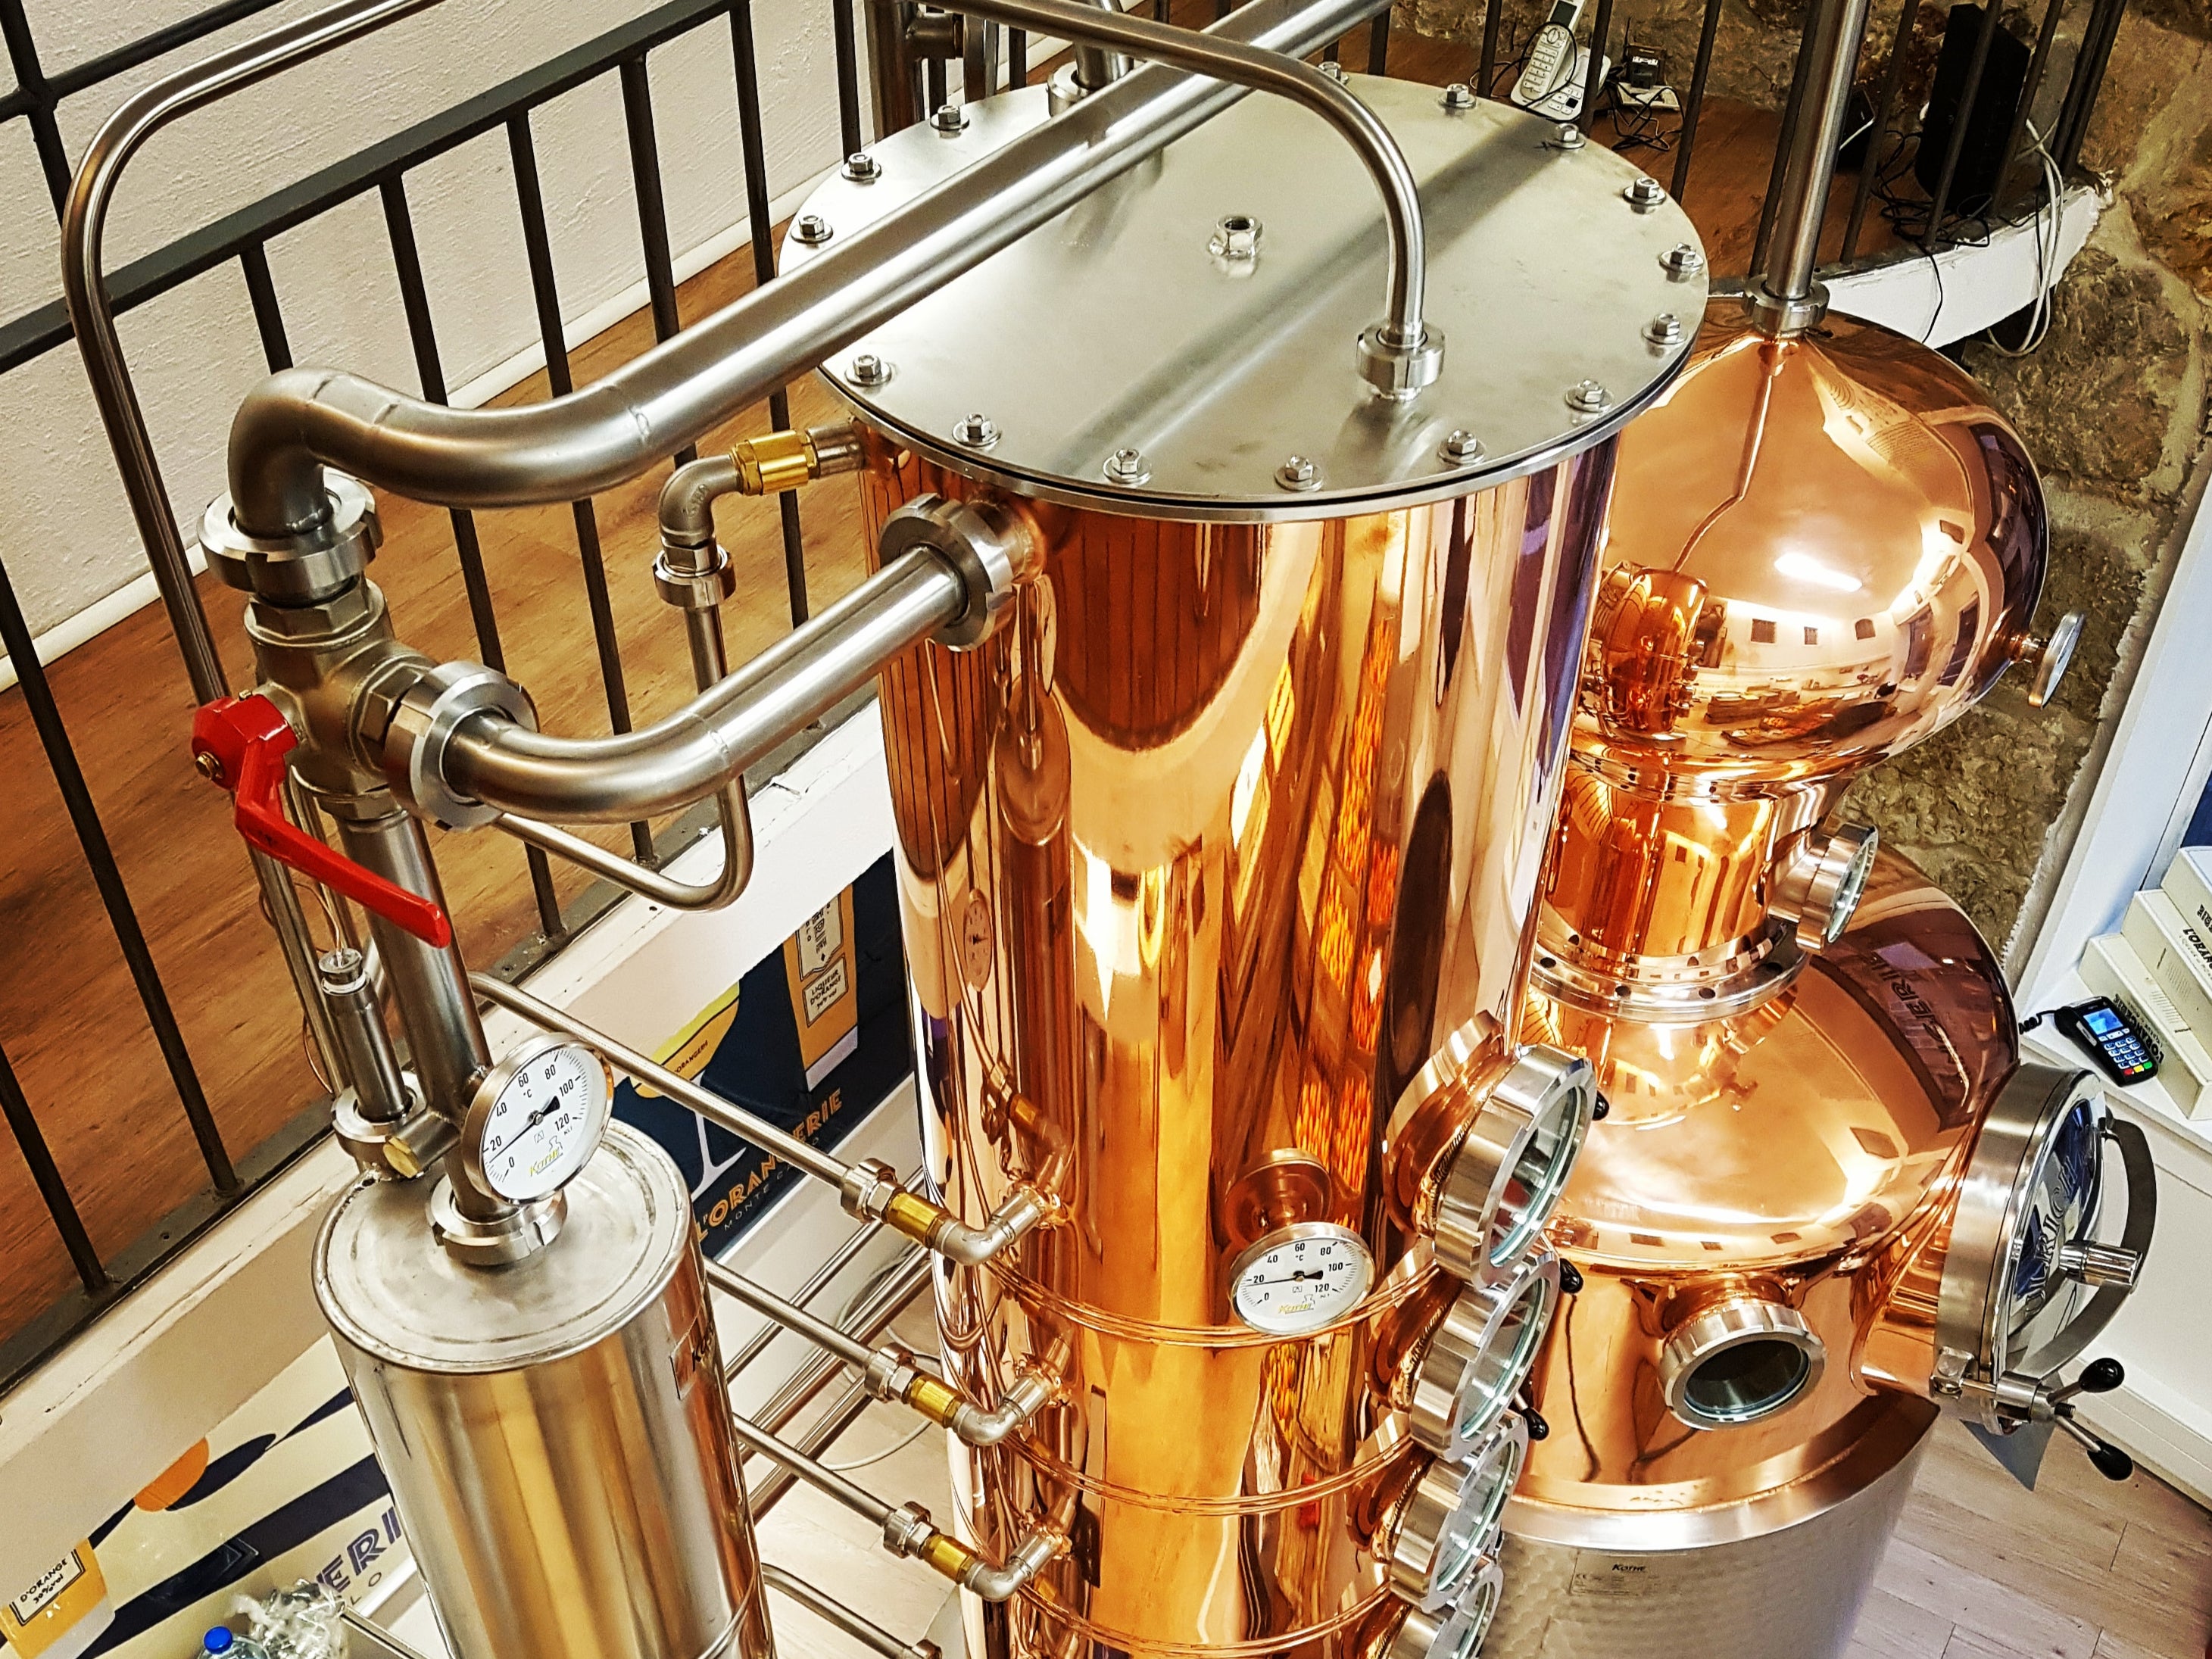 Copper stills work their magic at Philip Culazzo’s La Distillerie de Monaco